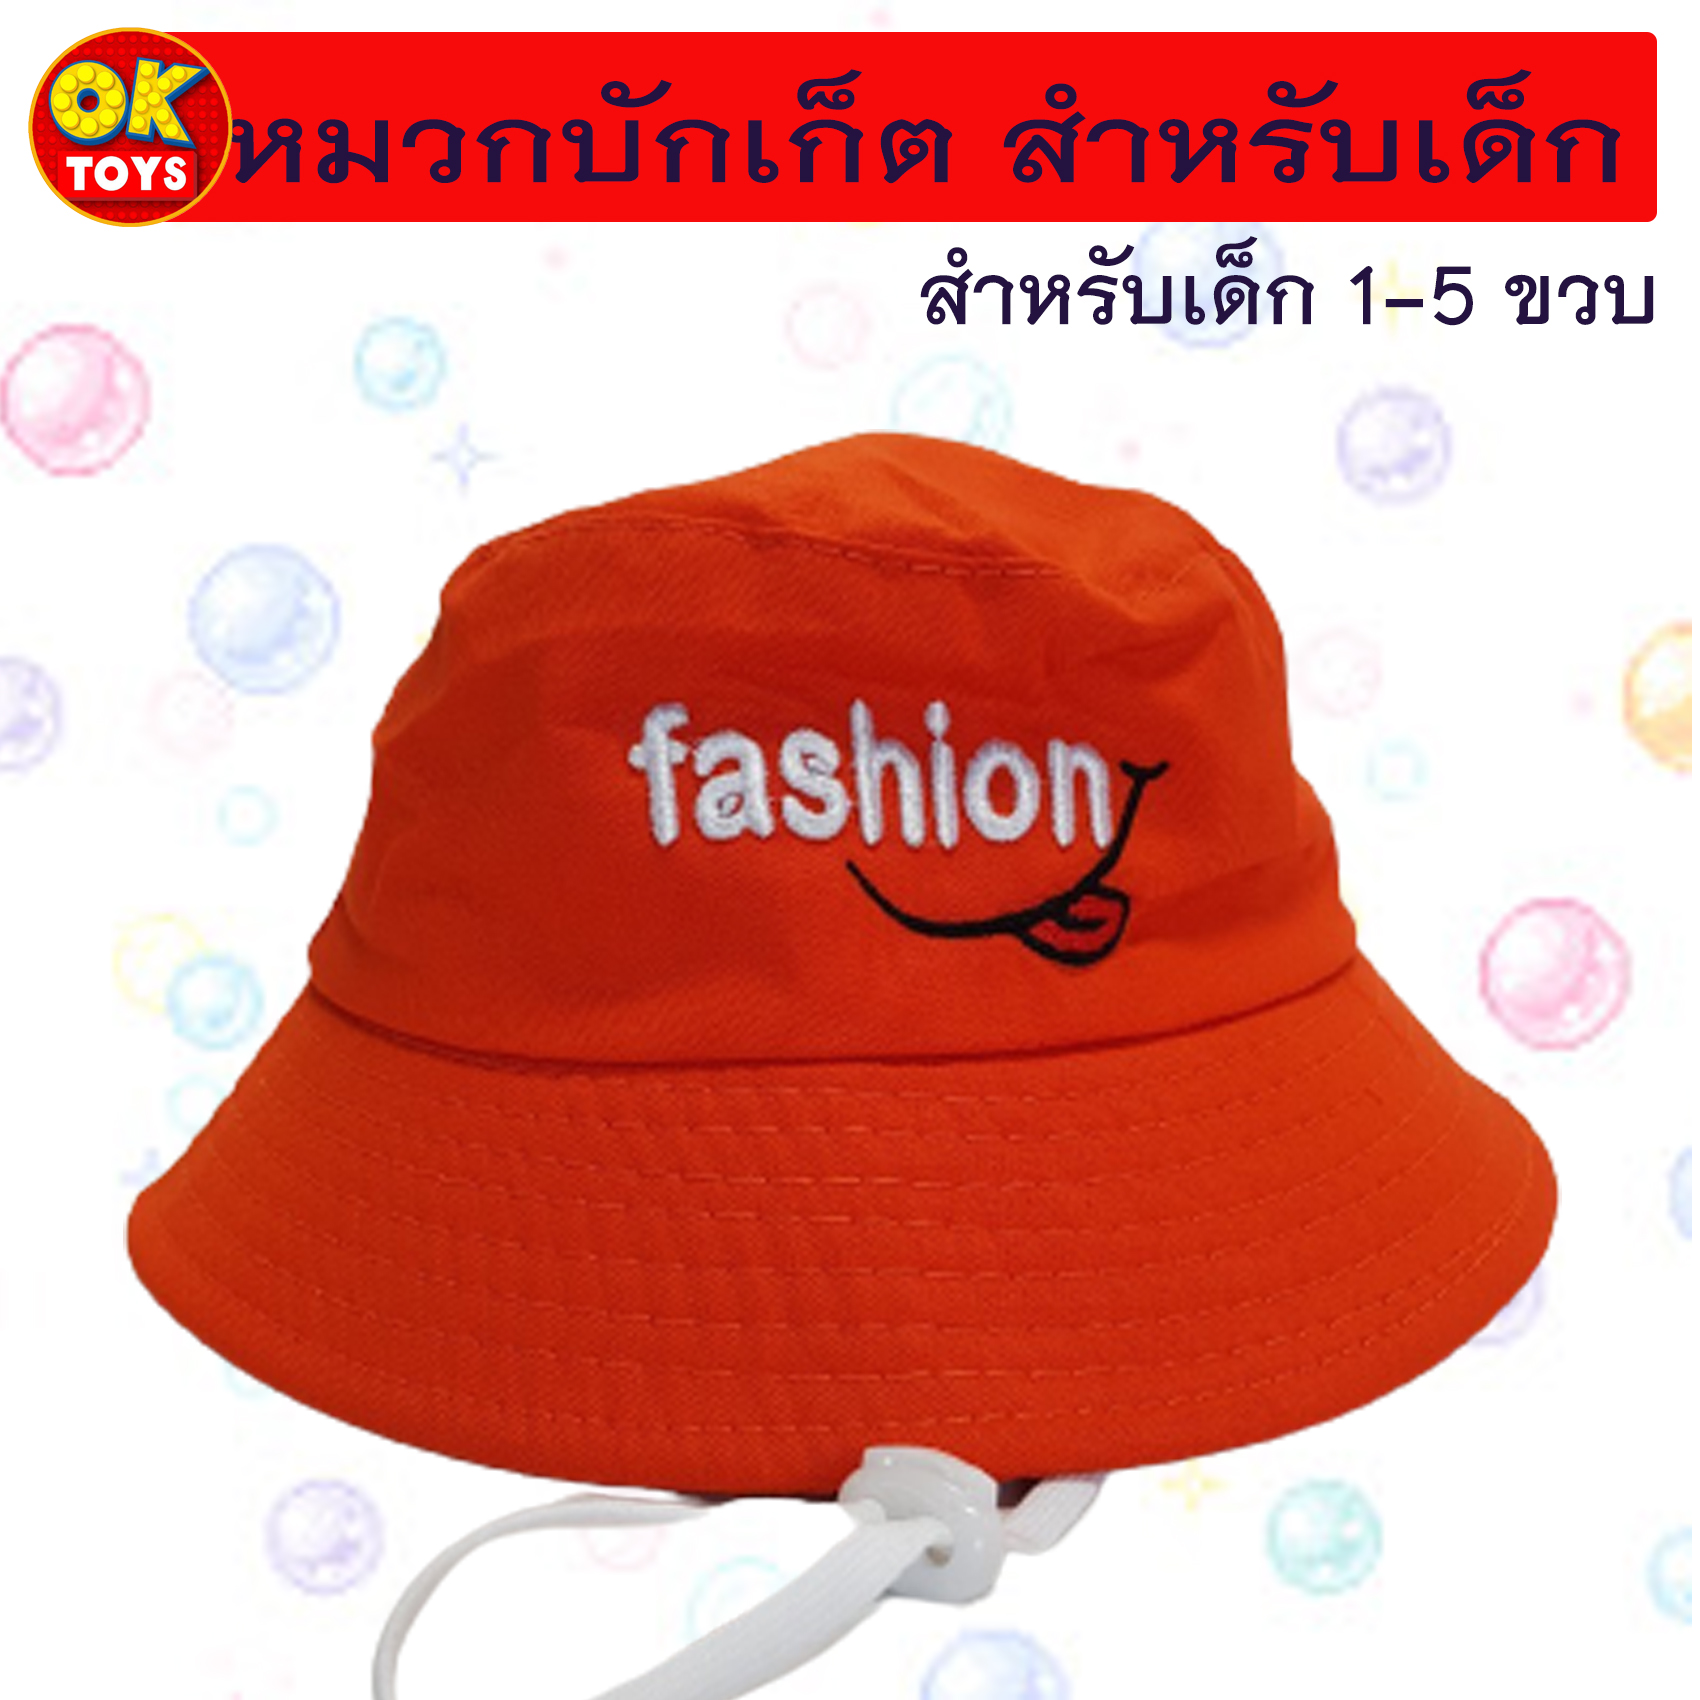 AM0035 หมวกบักเก็ตสำหรับเด็ก ลายปัก "fashion" พร้อมสายรัดคาง หมวกเด็กลายปักน่ารักๆ